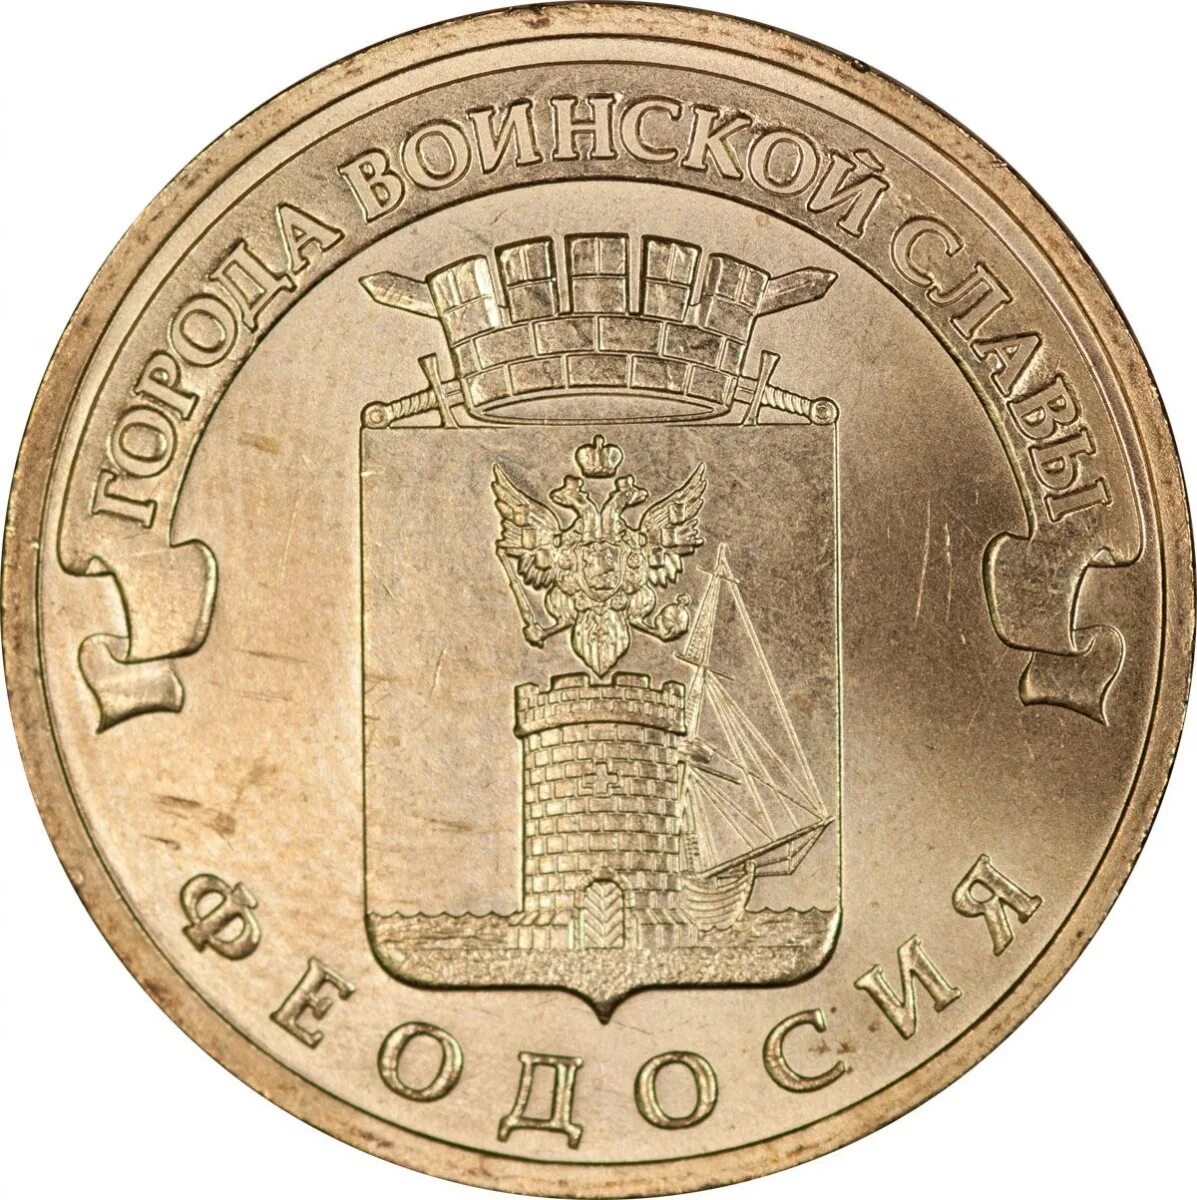 Сколько стоит монеты 10 рублей города